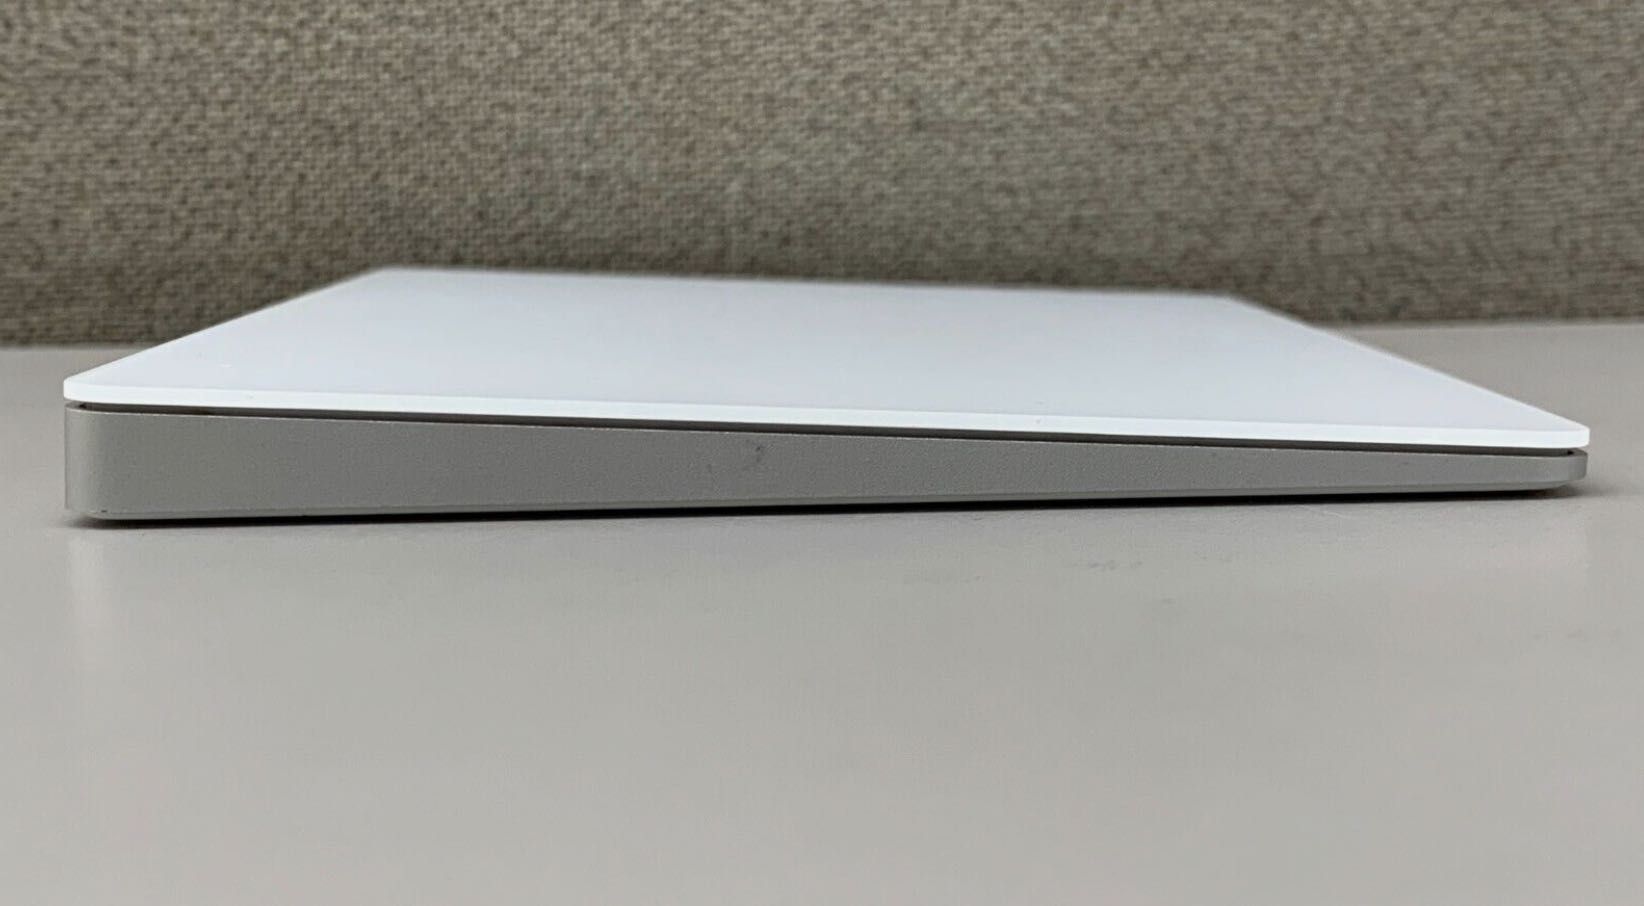 Apple Magic Trackpad 2 Перший власник Ідеальний стан